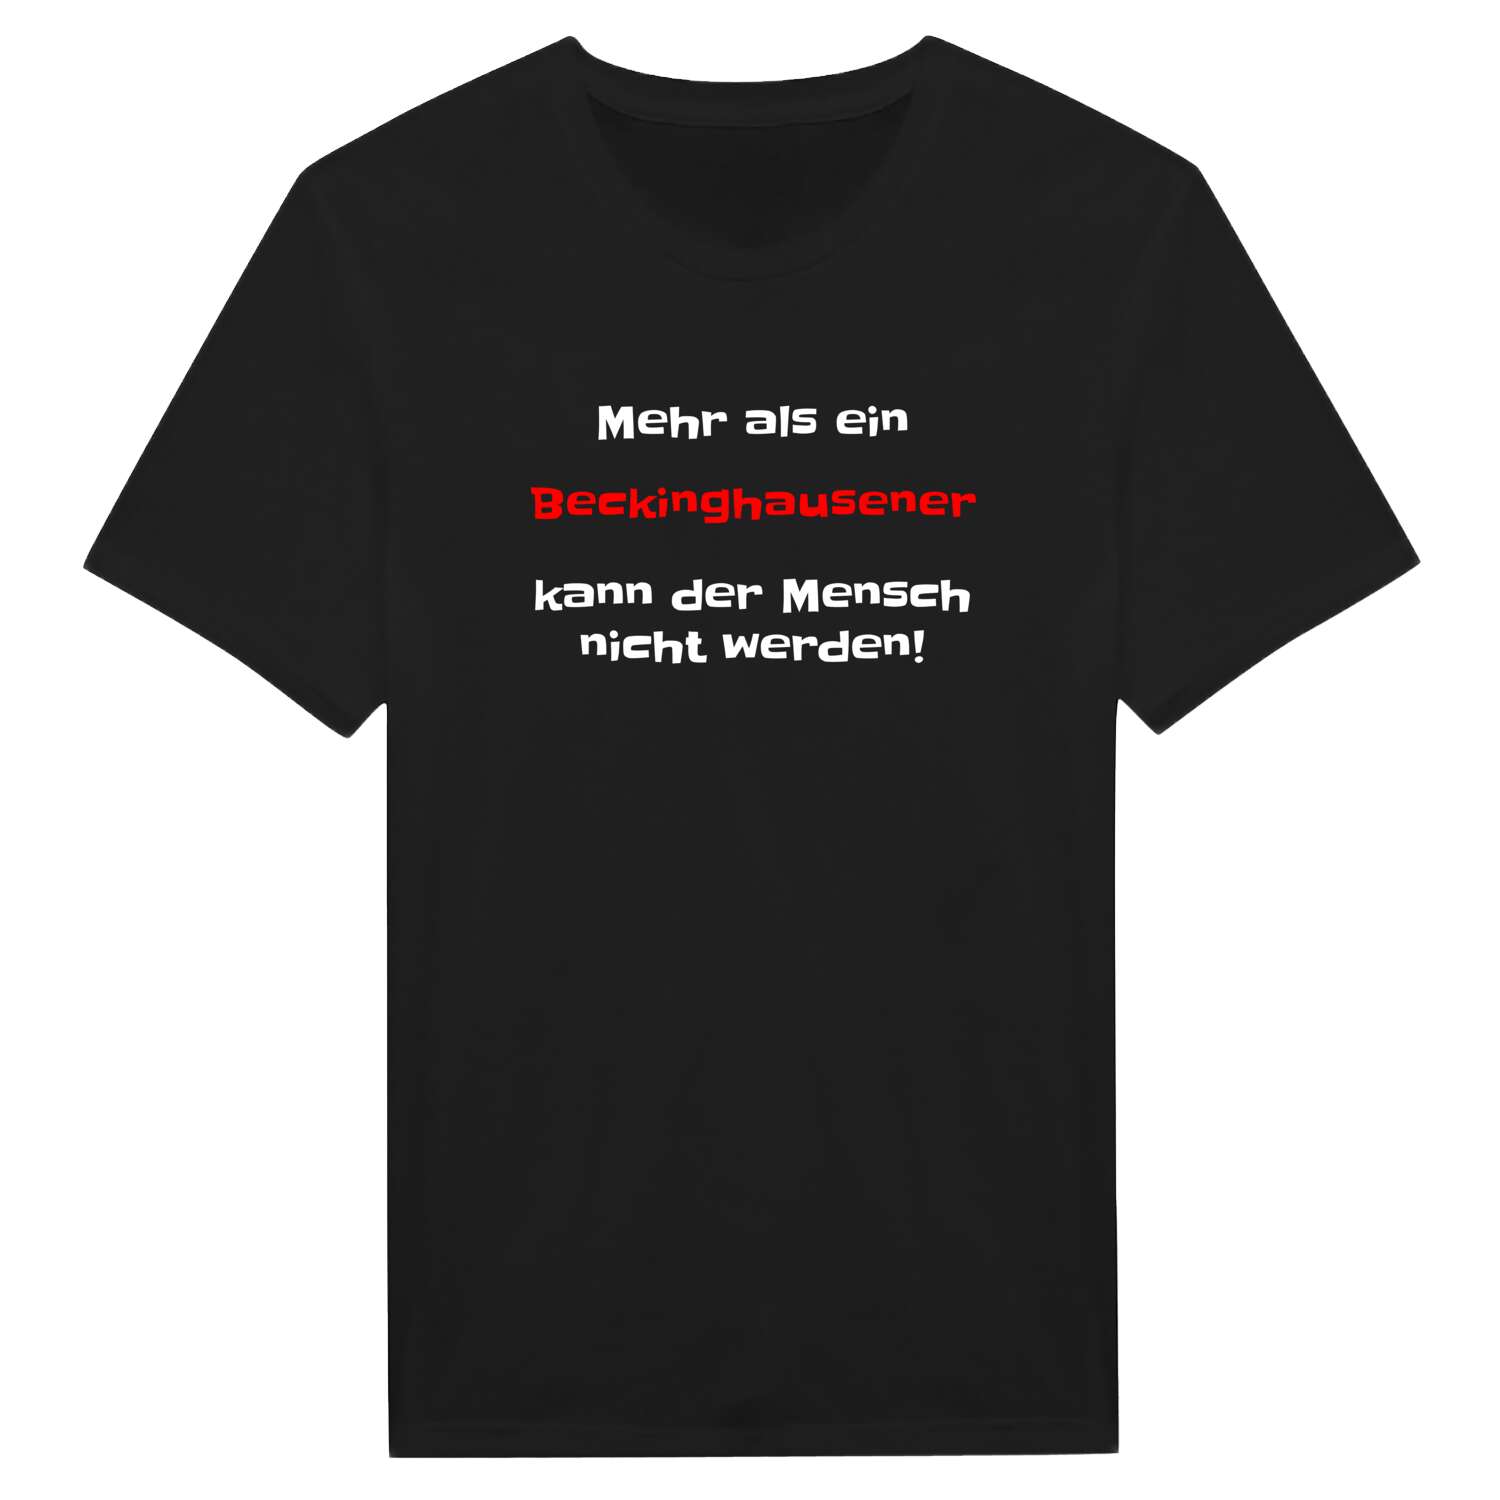 Beckinghausen T-Shirt »Mehr als ein«